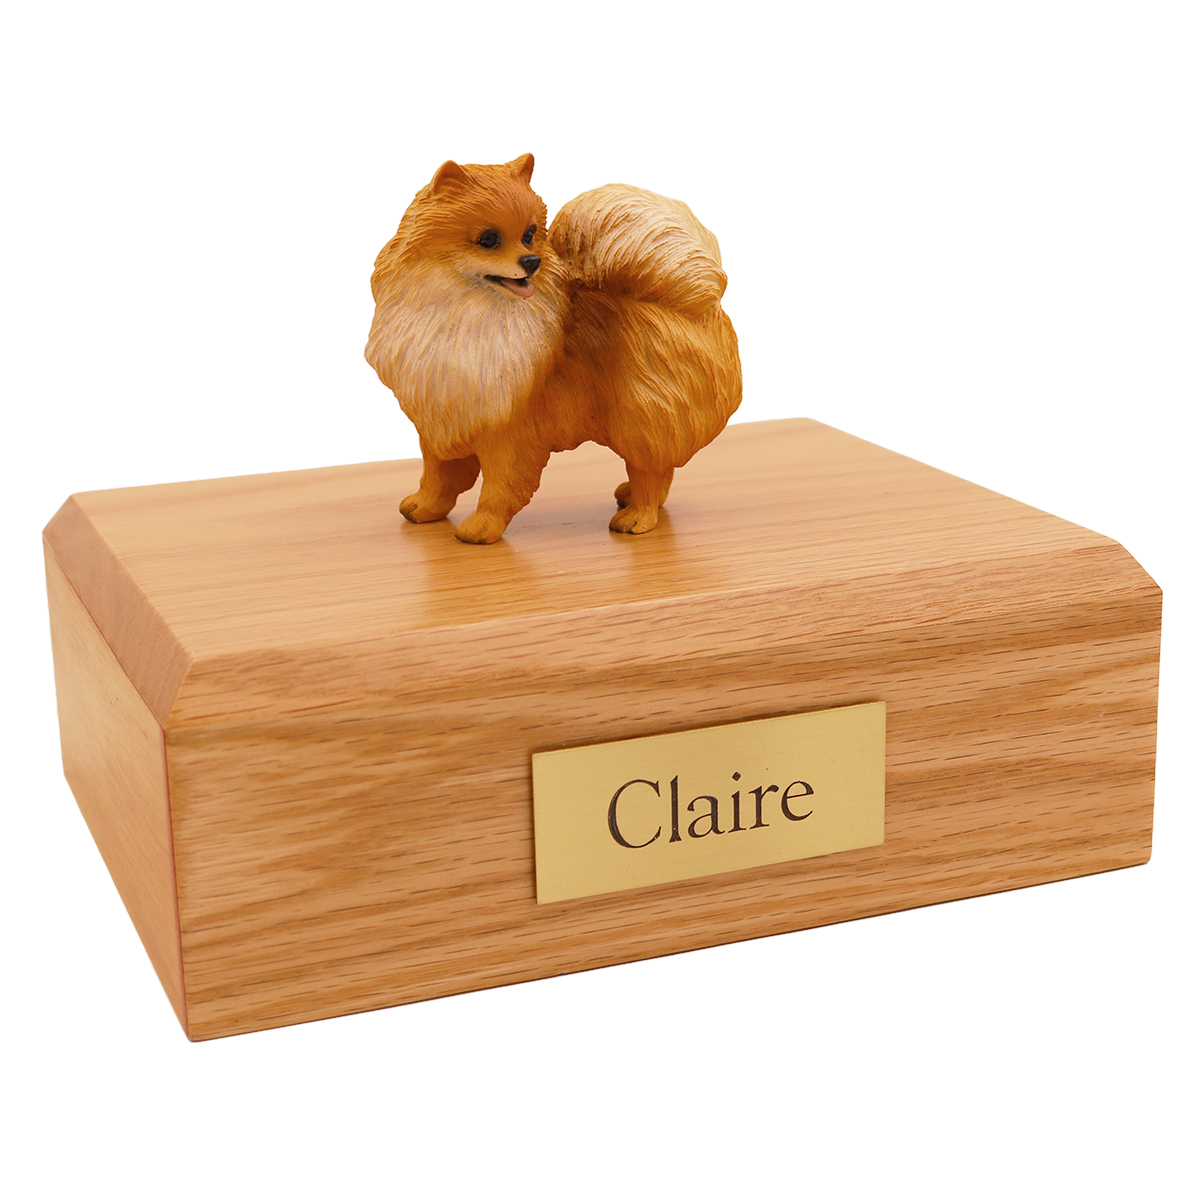 Dog, Pomeranian - Figurine Urn